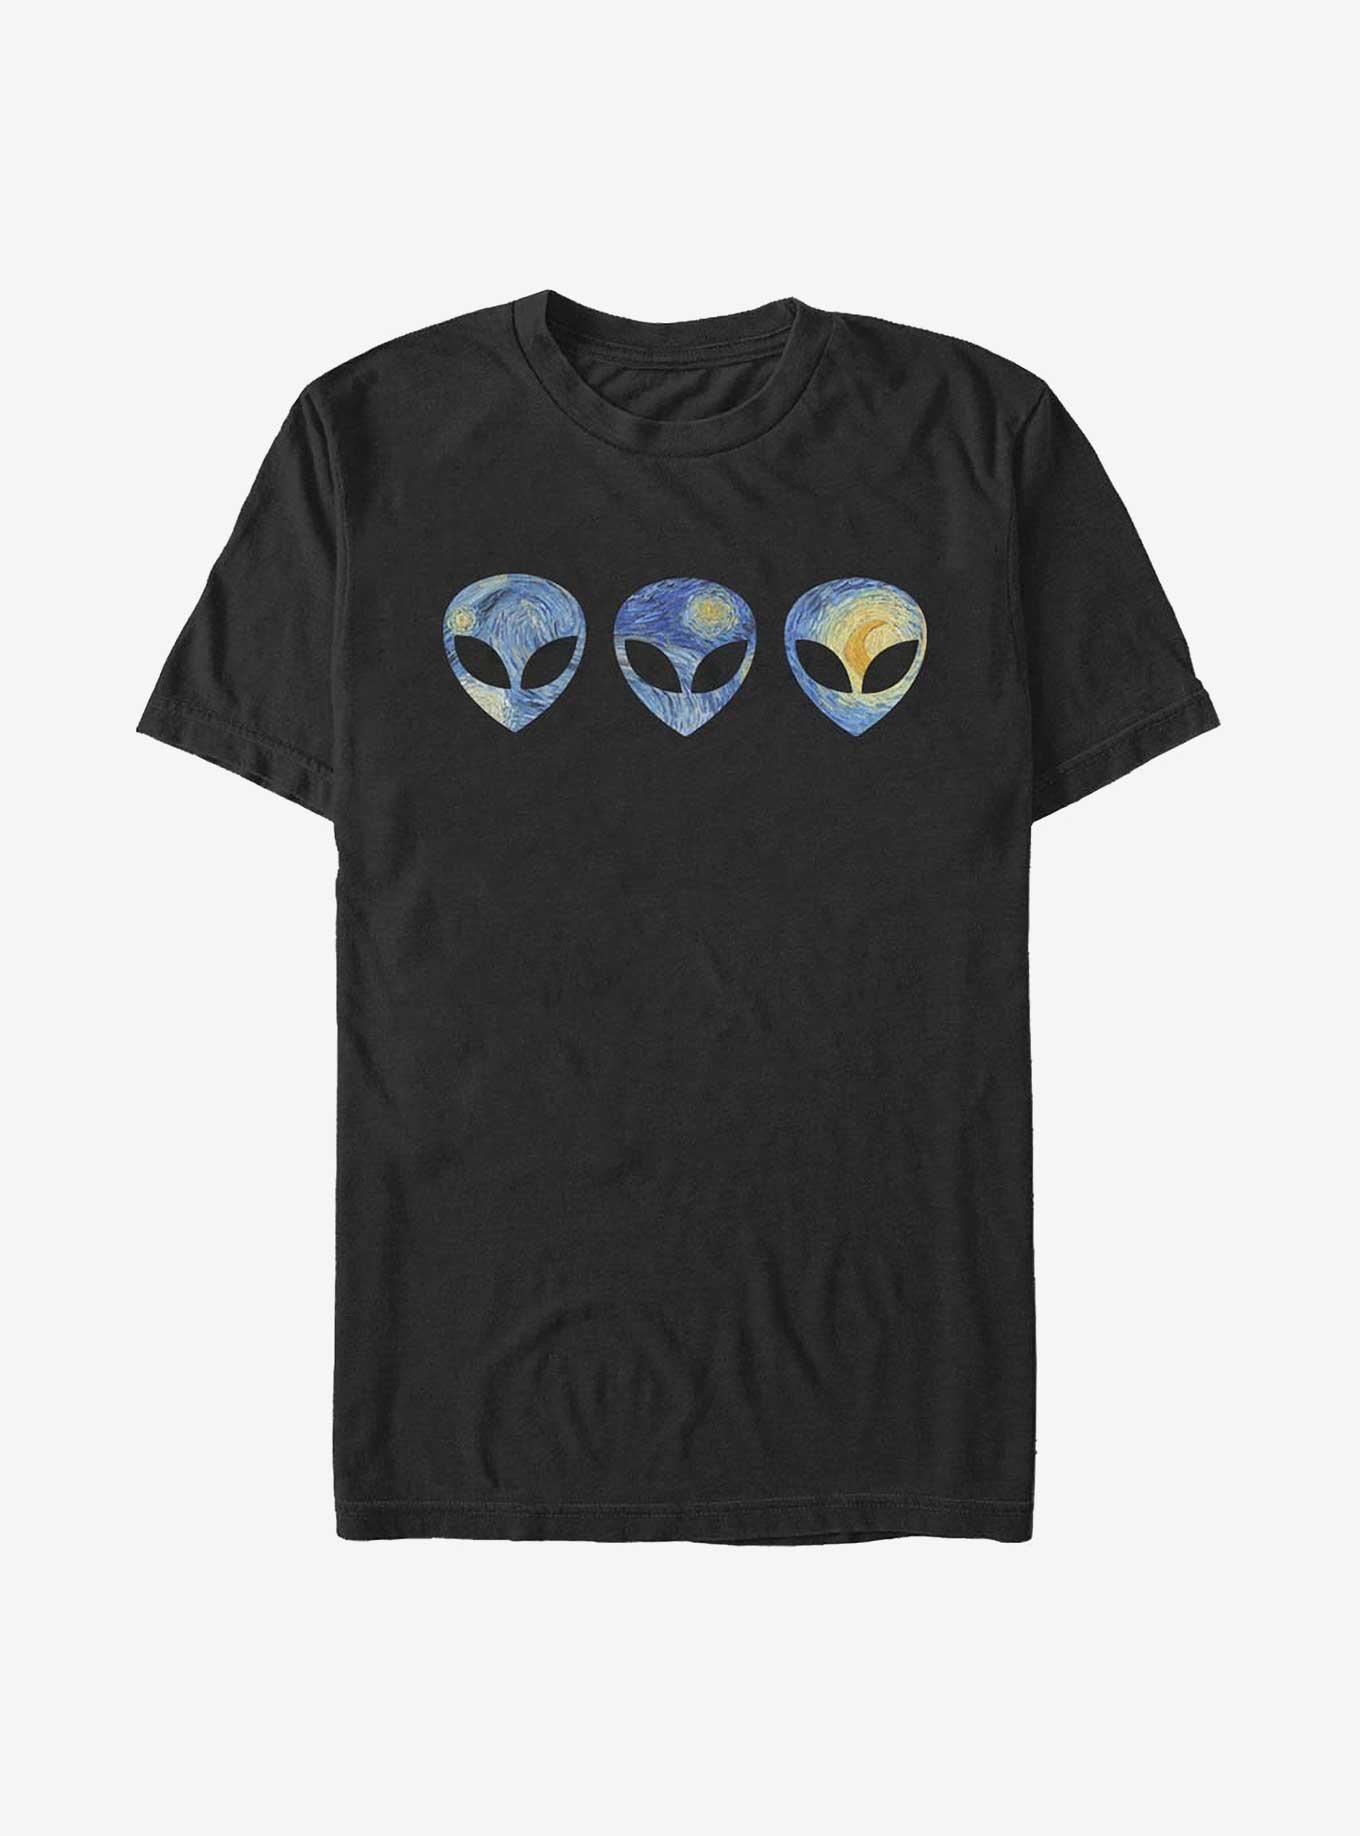 Alien Go T-Shirt